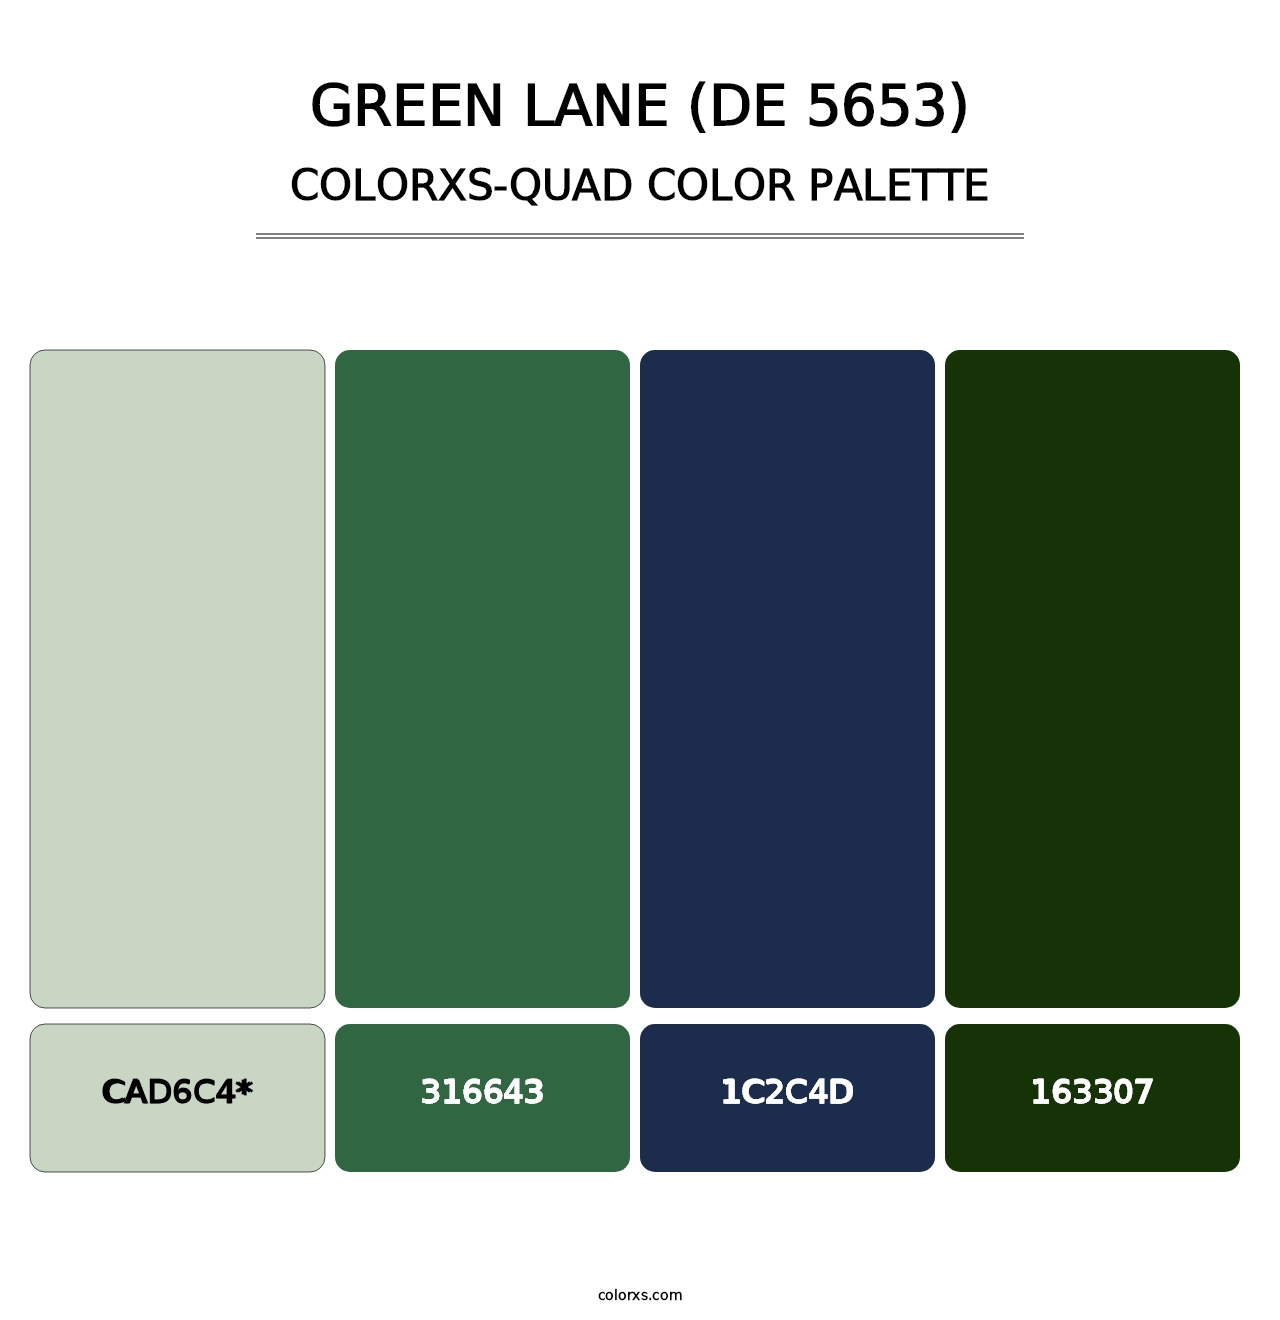 Green Lane (DE 5653) - Colorxs Quad Palette